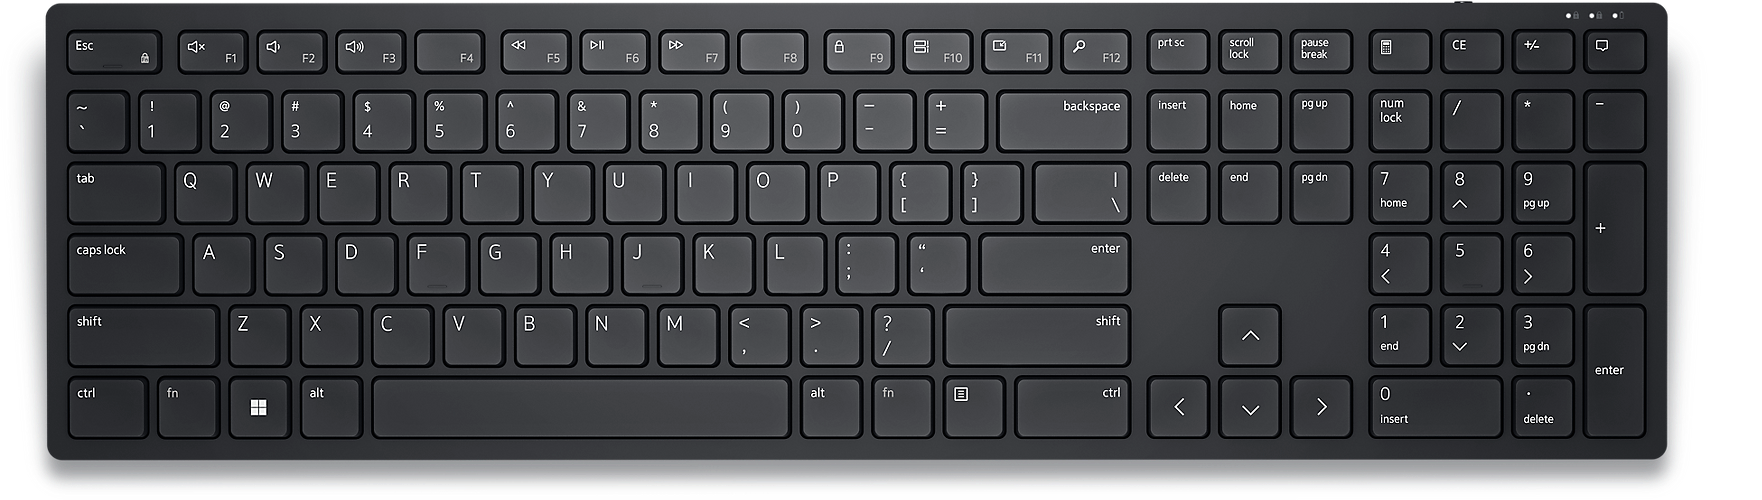 Dell Wireless Keyboard - KB500